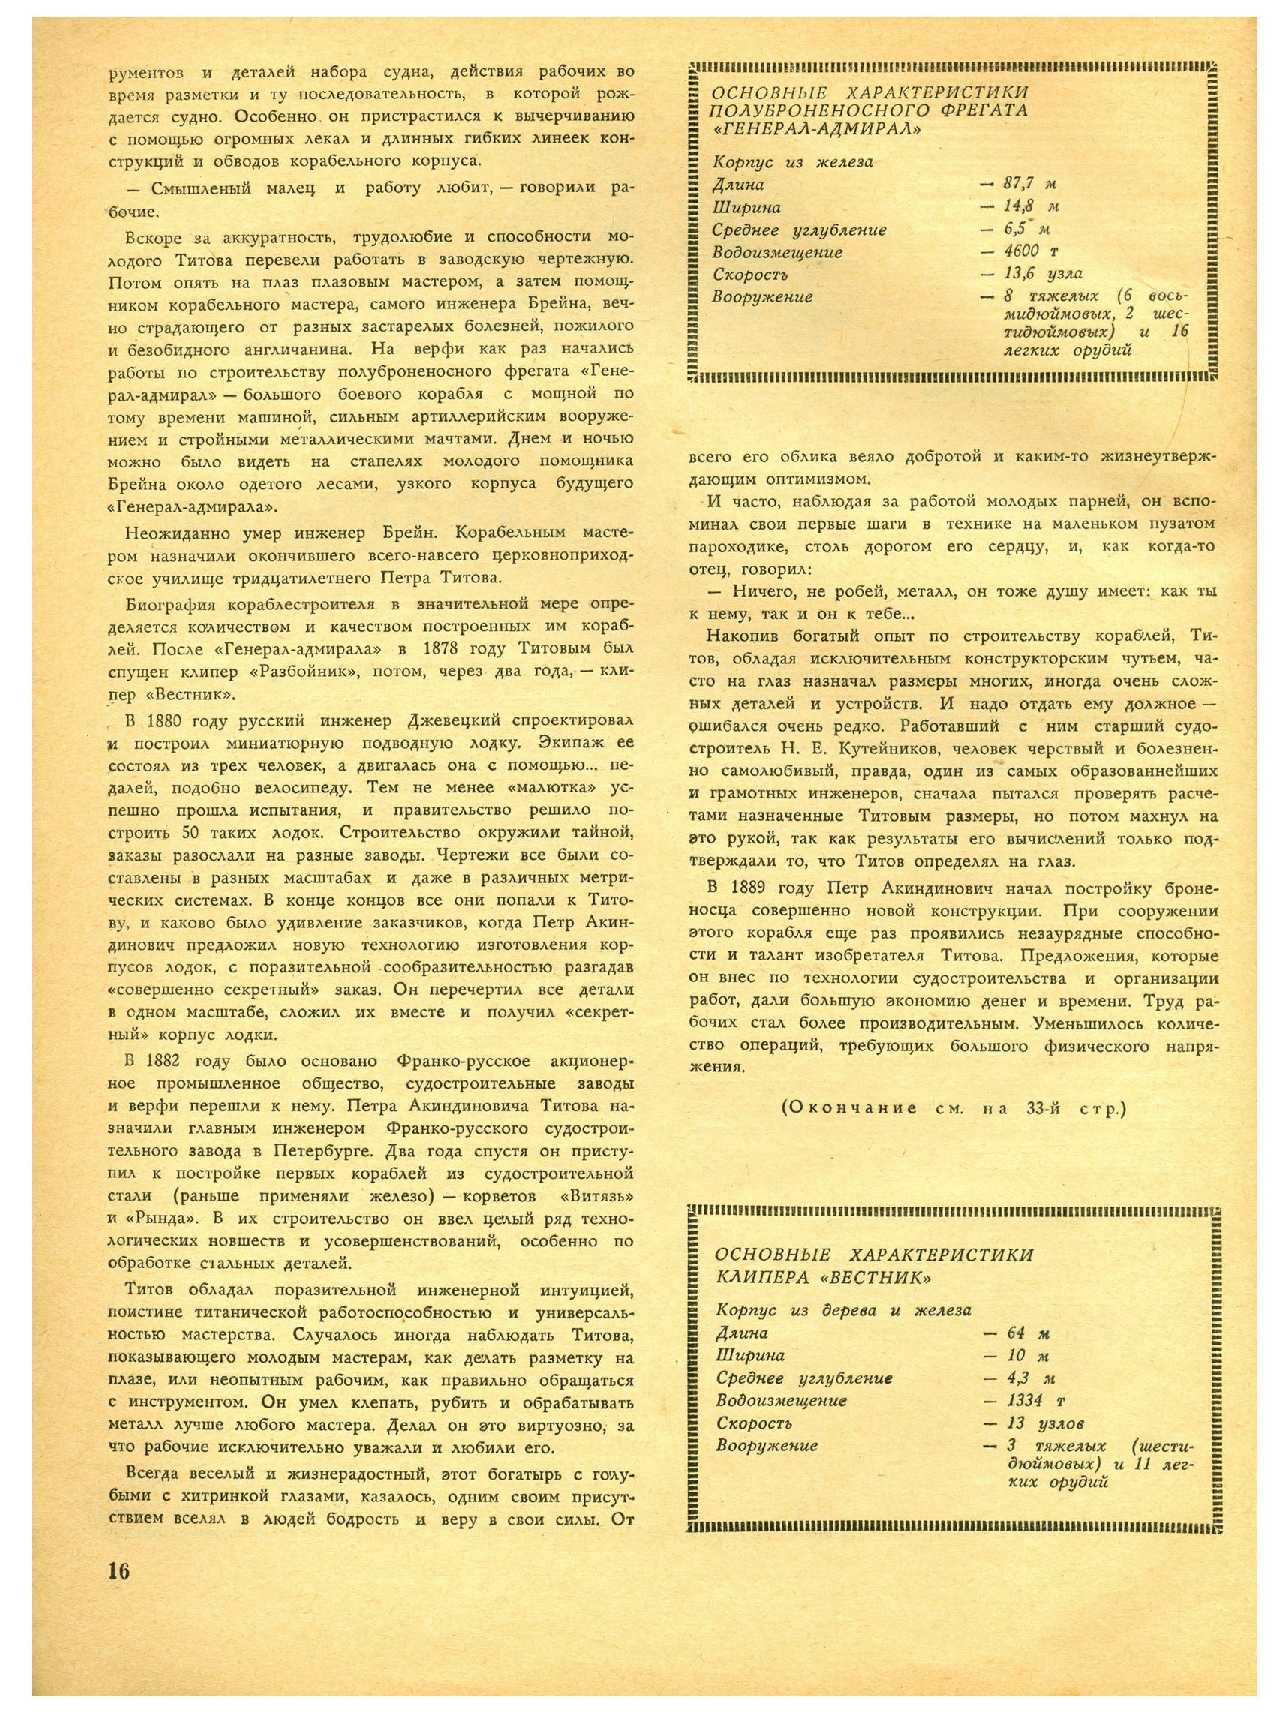 МК 4, 1966, 16 c.